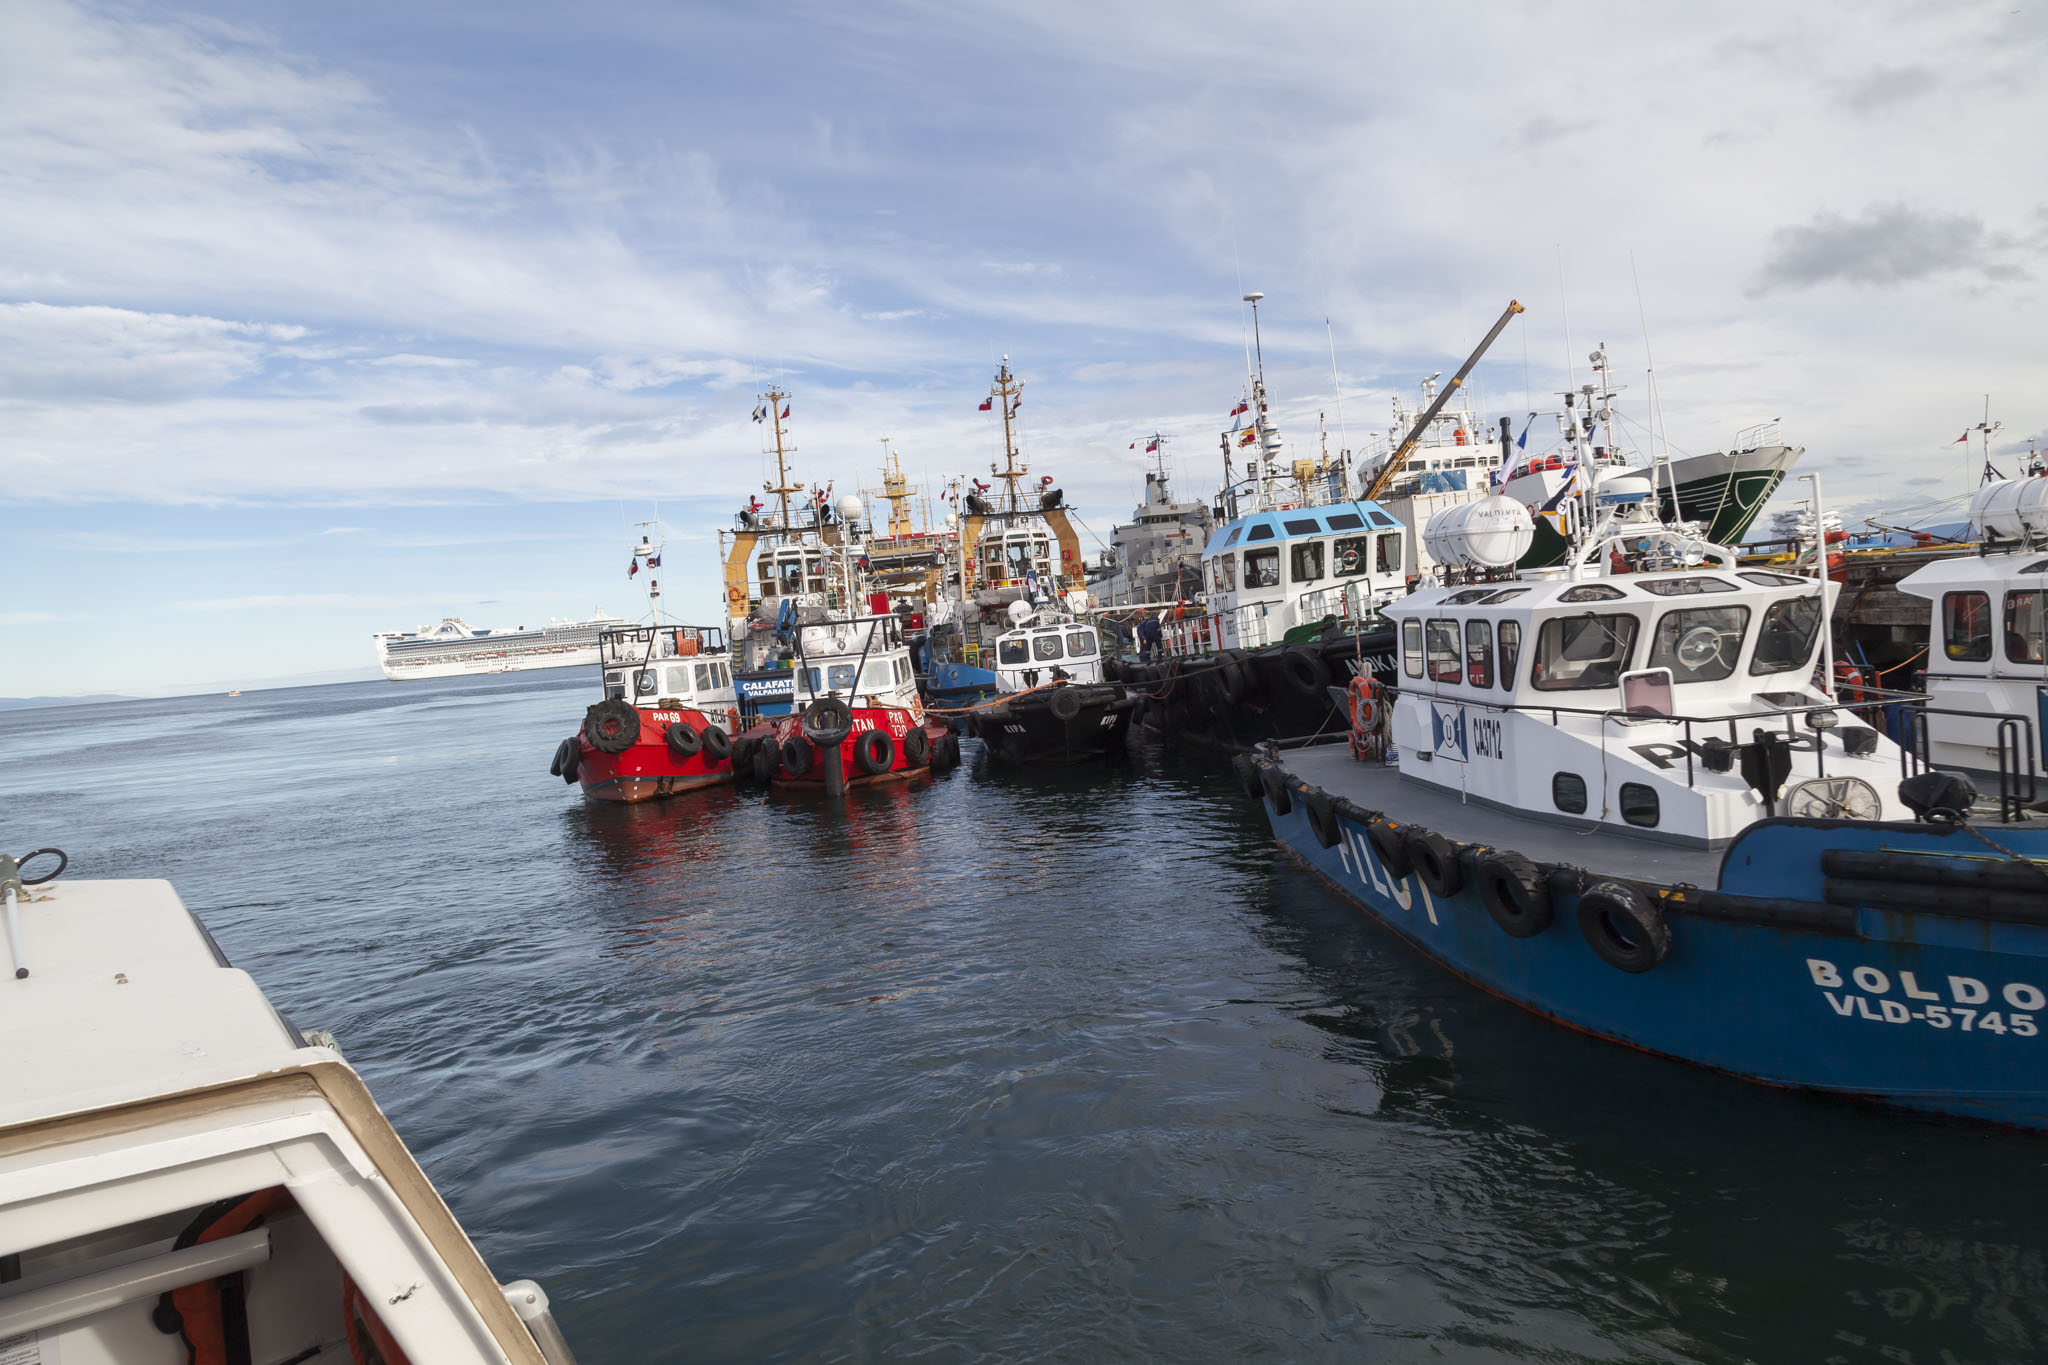 Punta Arenas Dock, Tender Boat